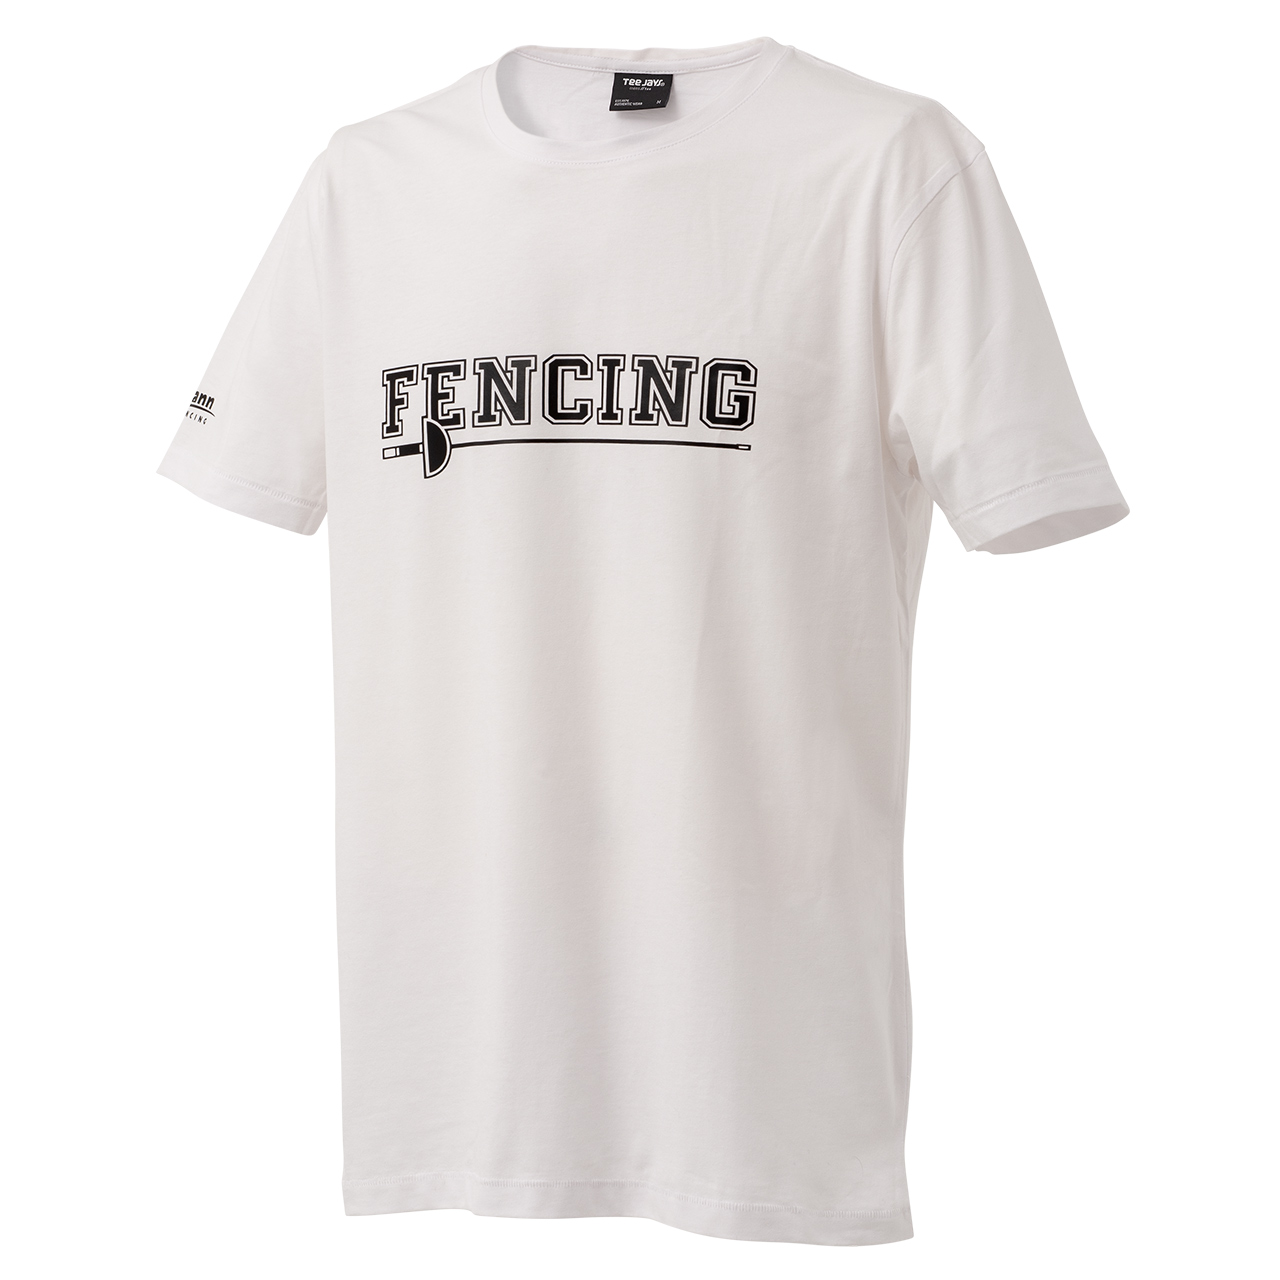 T-Shirt "Fencing", weiß